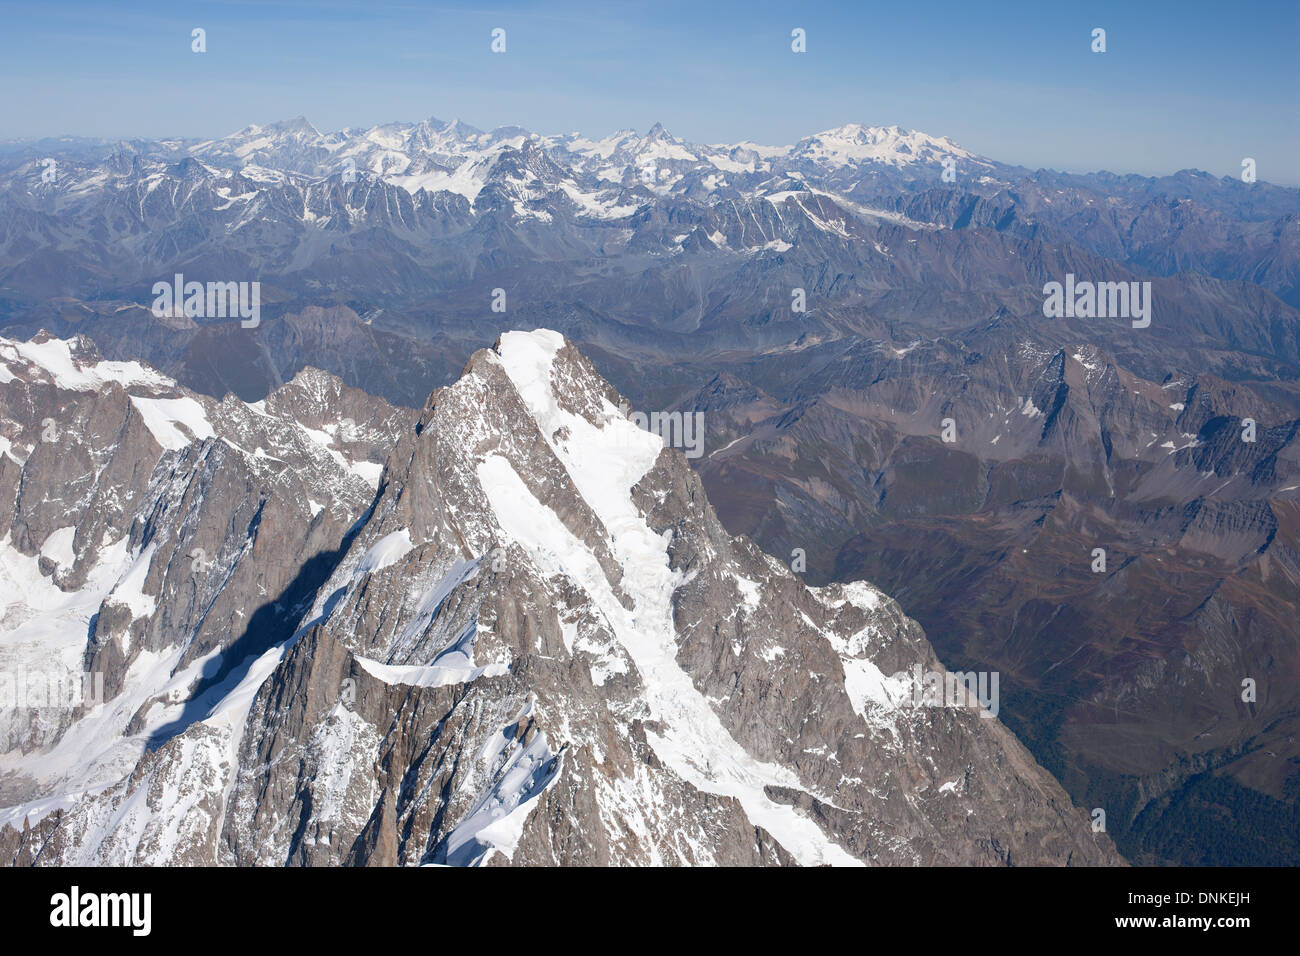 LUFTAUFNAHME. Grandes Jorasses (Höhe: 4208m) mit Monte Rosa und Matterhorn in der Ferne. Chamonix Mont-Blanc, Frankreich & Courmayeur, Italien. Stockfoto